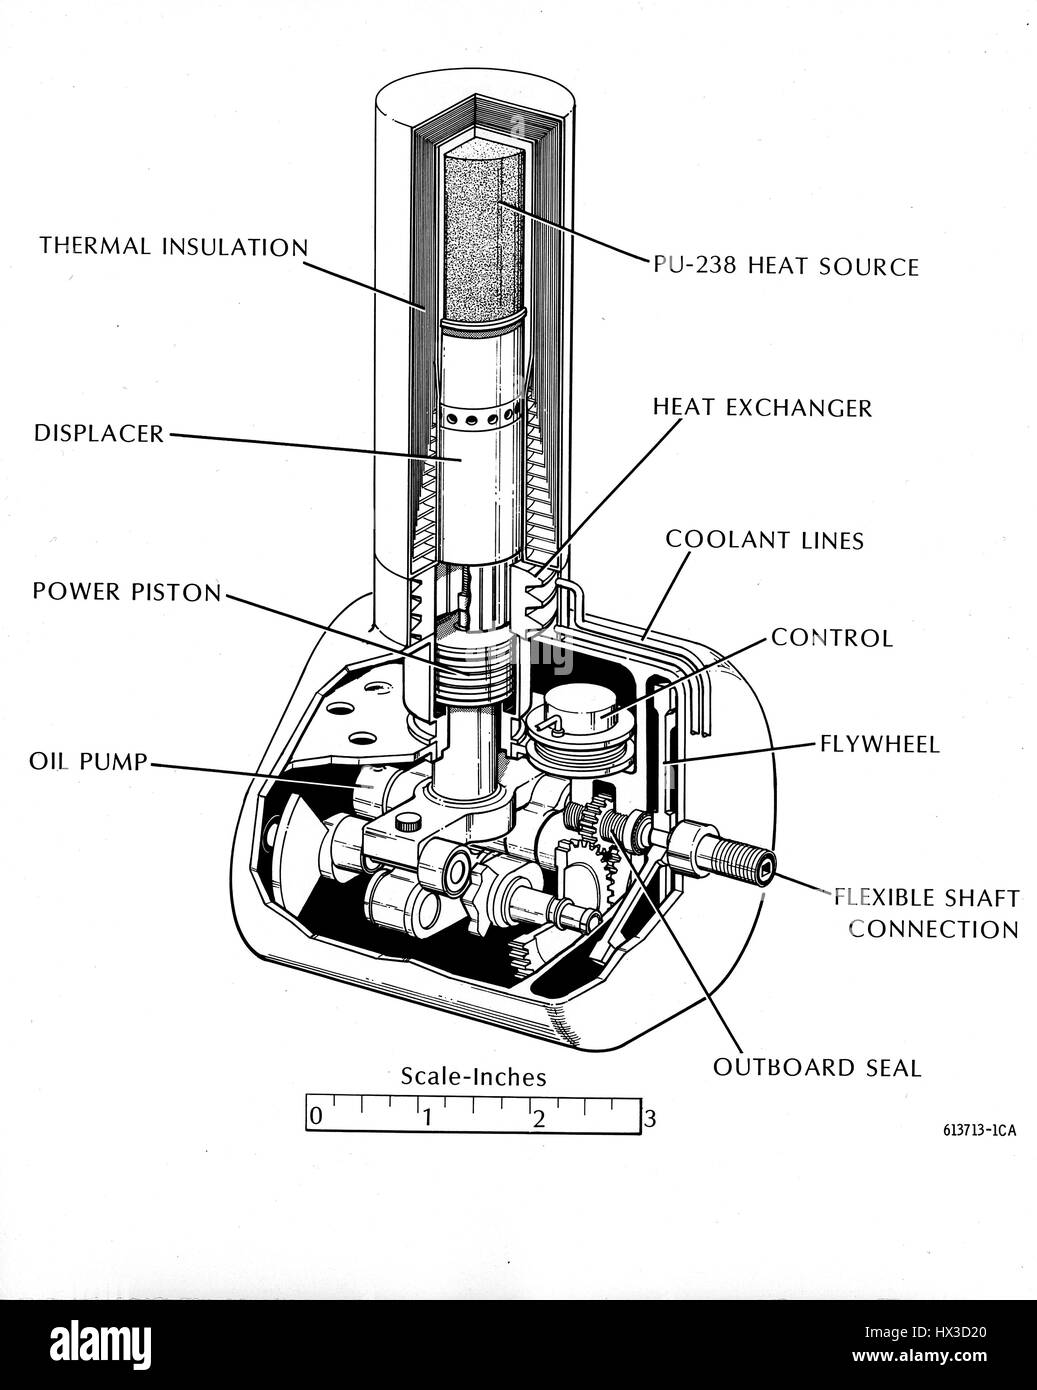 Eine illustrierte, Cutaway das Diagramm zeigt die Innenleben eines Atom-künstlichen Herzens geprüft durch die Atomic Energy Commission, 1973. Bild mit freundlicher Genehmigung US Department of Energy. Stockfoto